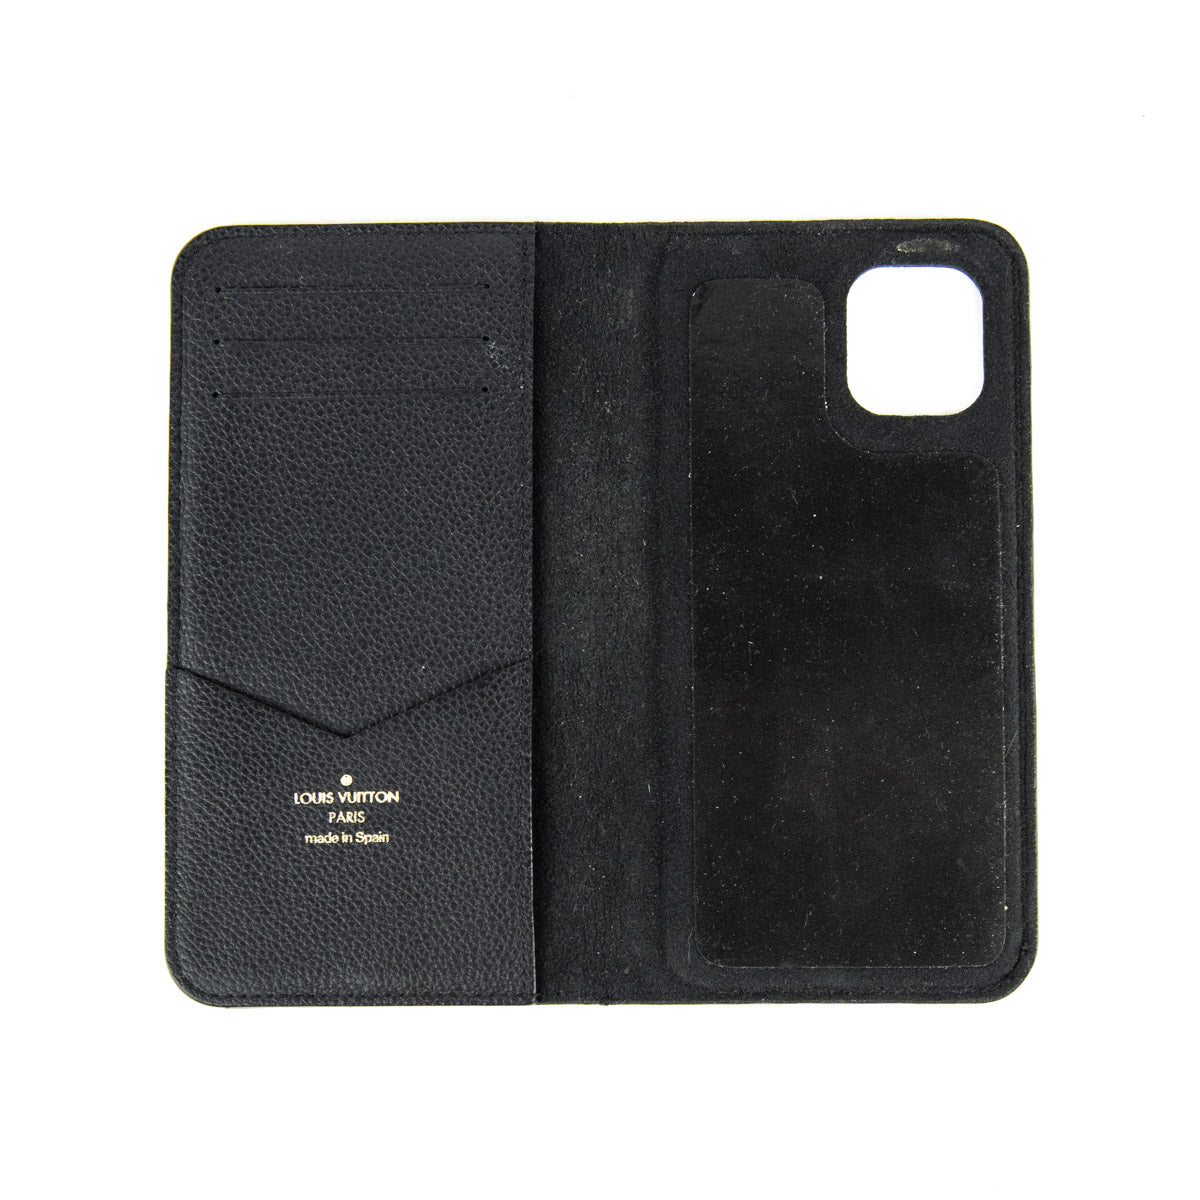 Louis Vuitton Black Empreinte Monogram iPhone 12 Folio Case